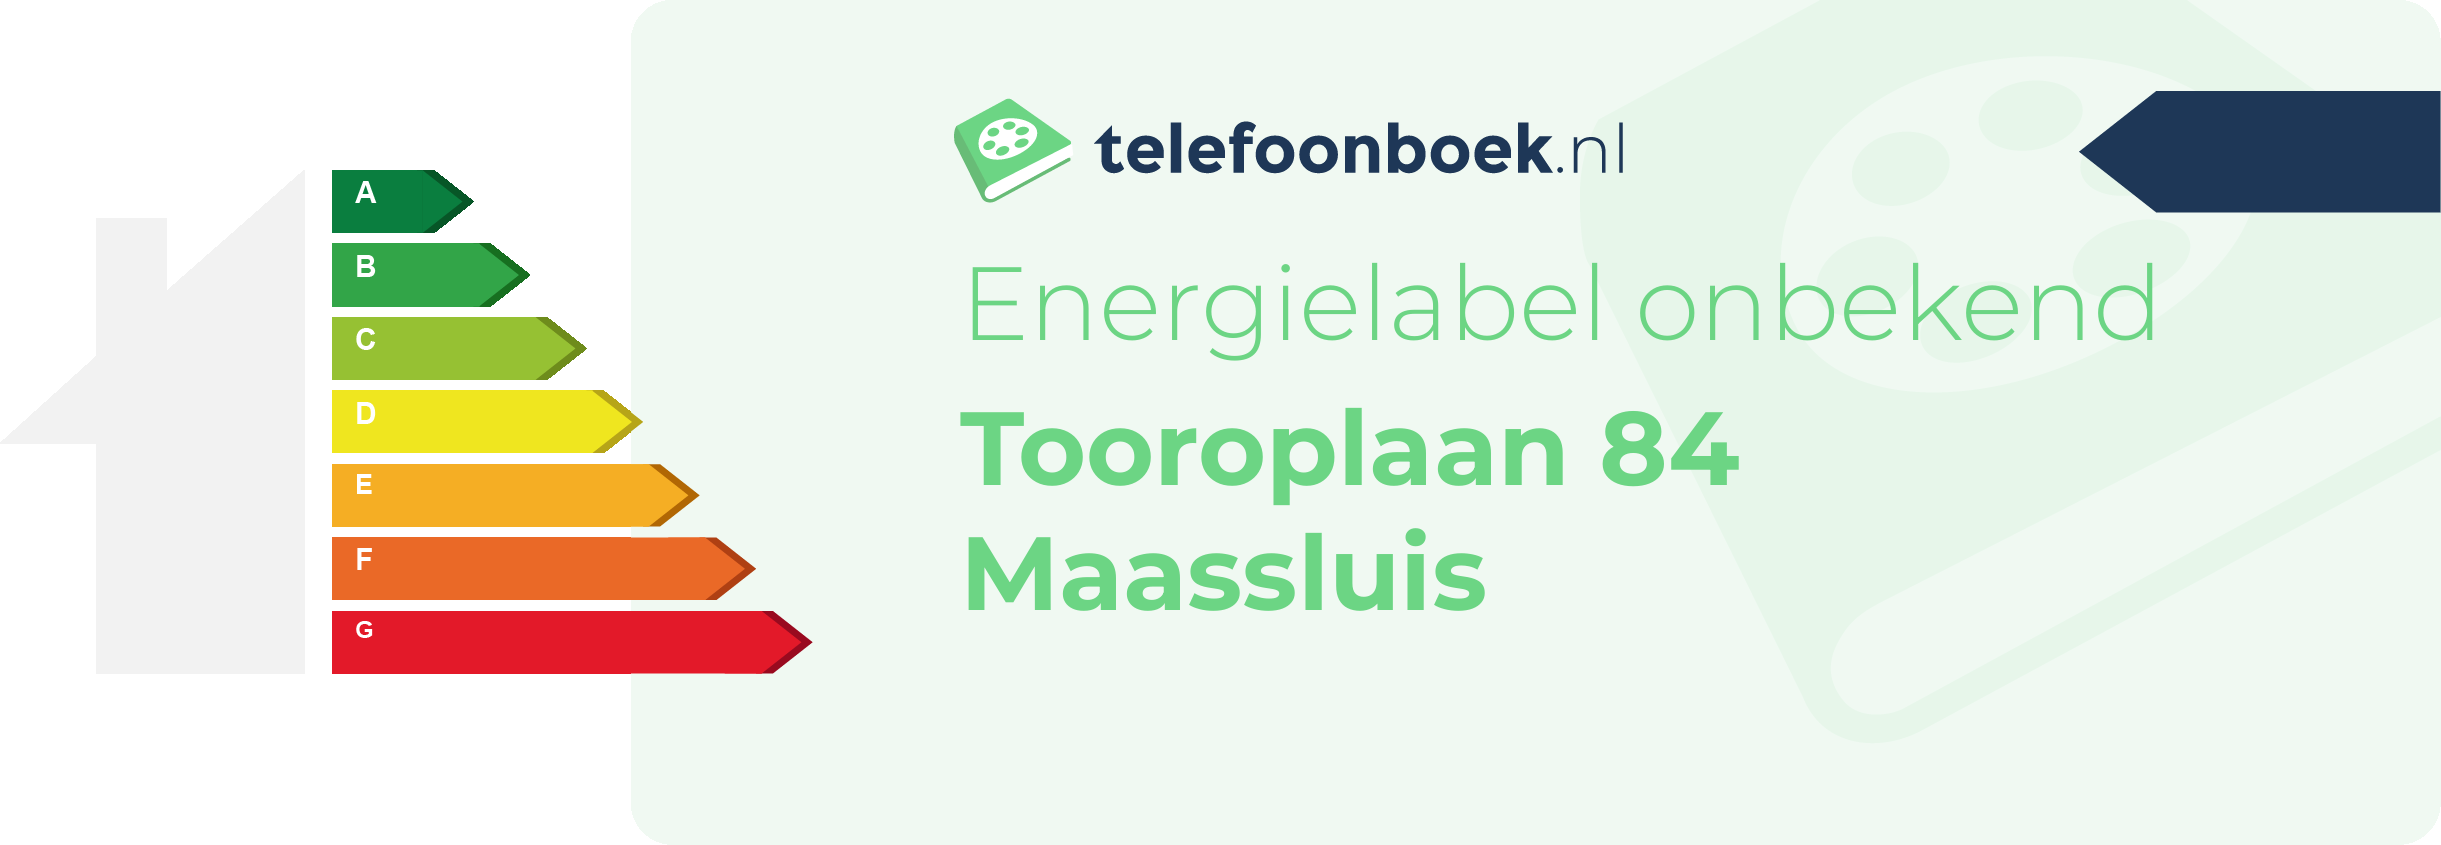 Energielabel Tooroplaan 84 Maassluis